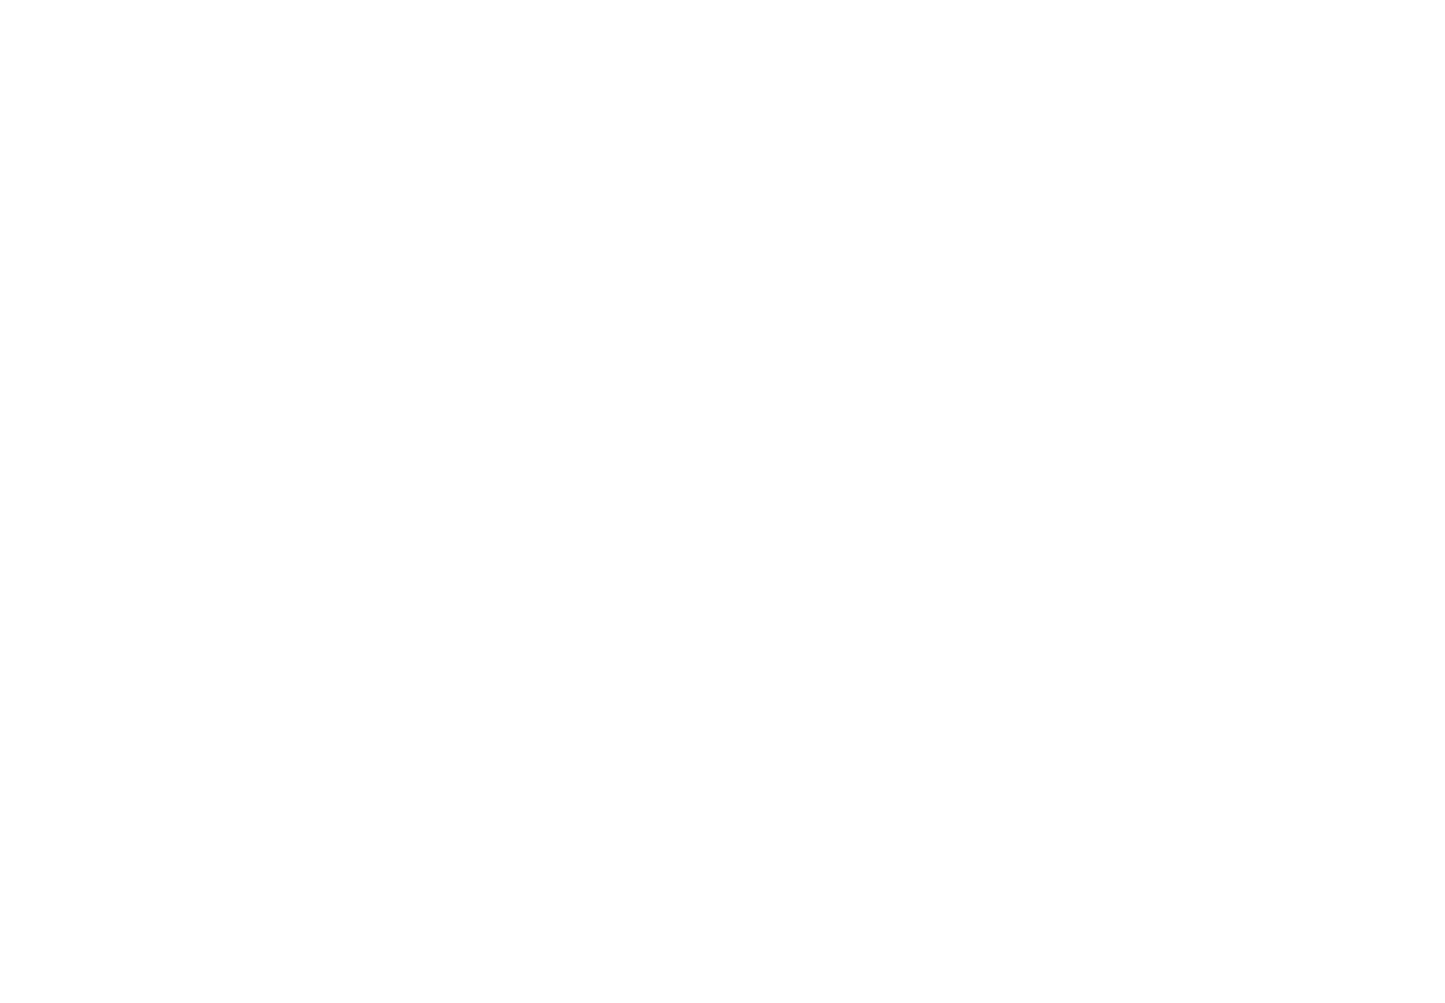 SkyCity